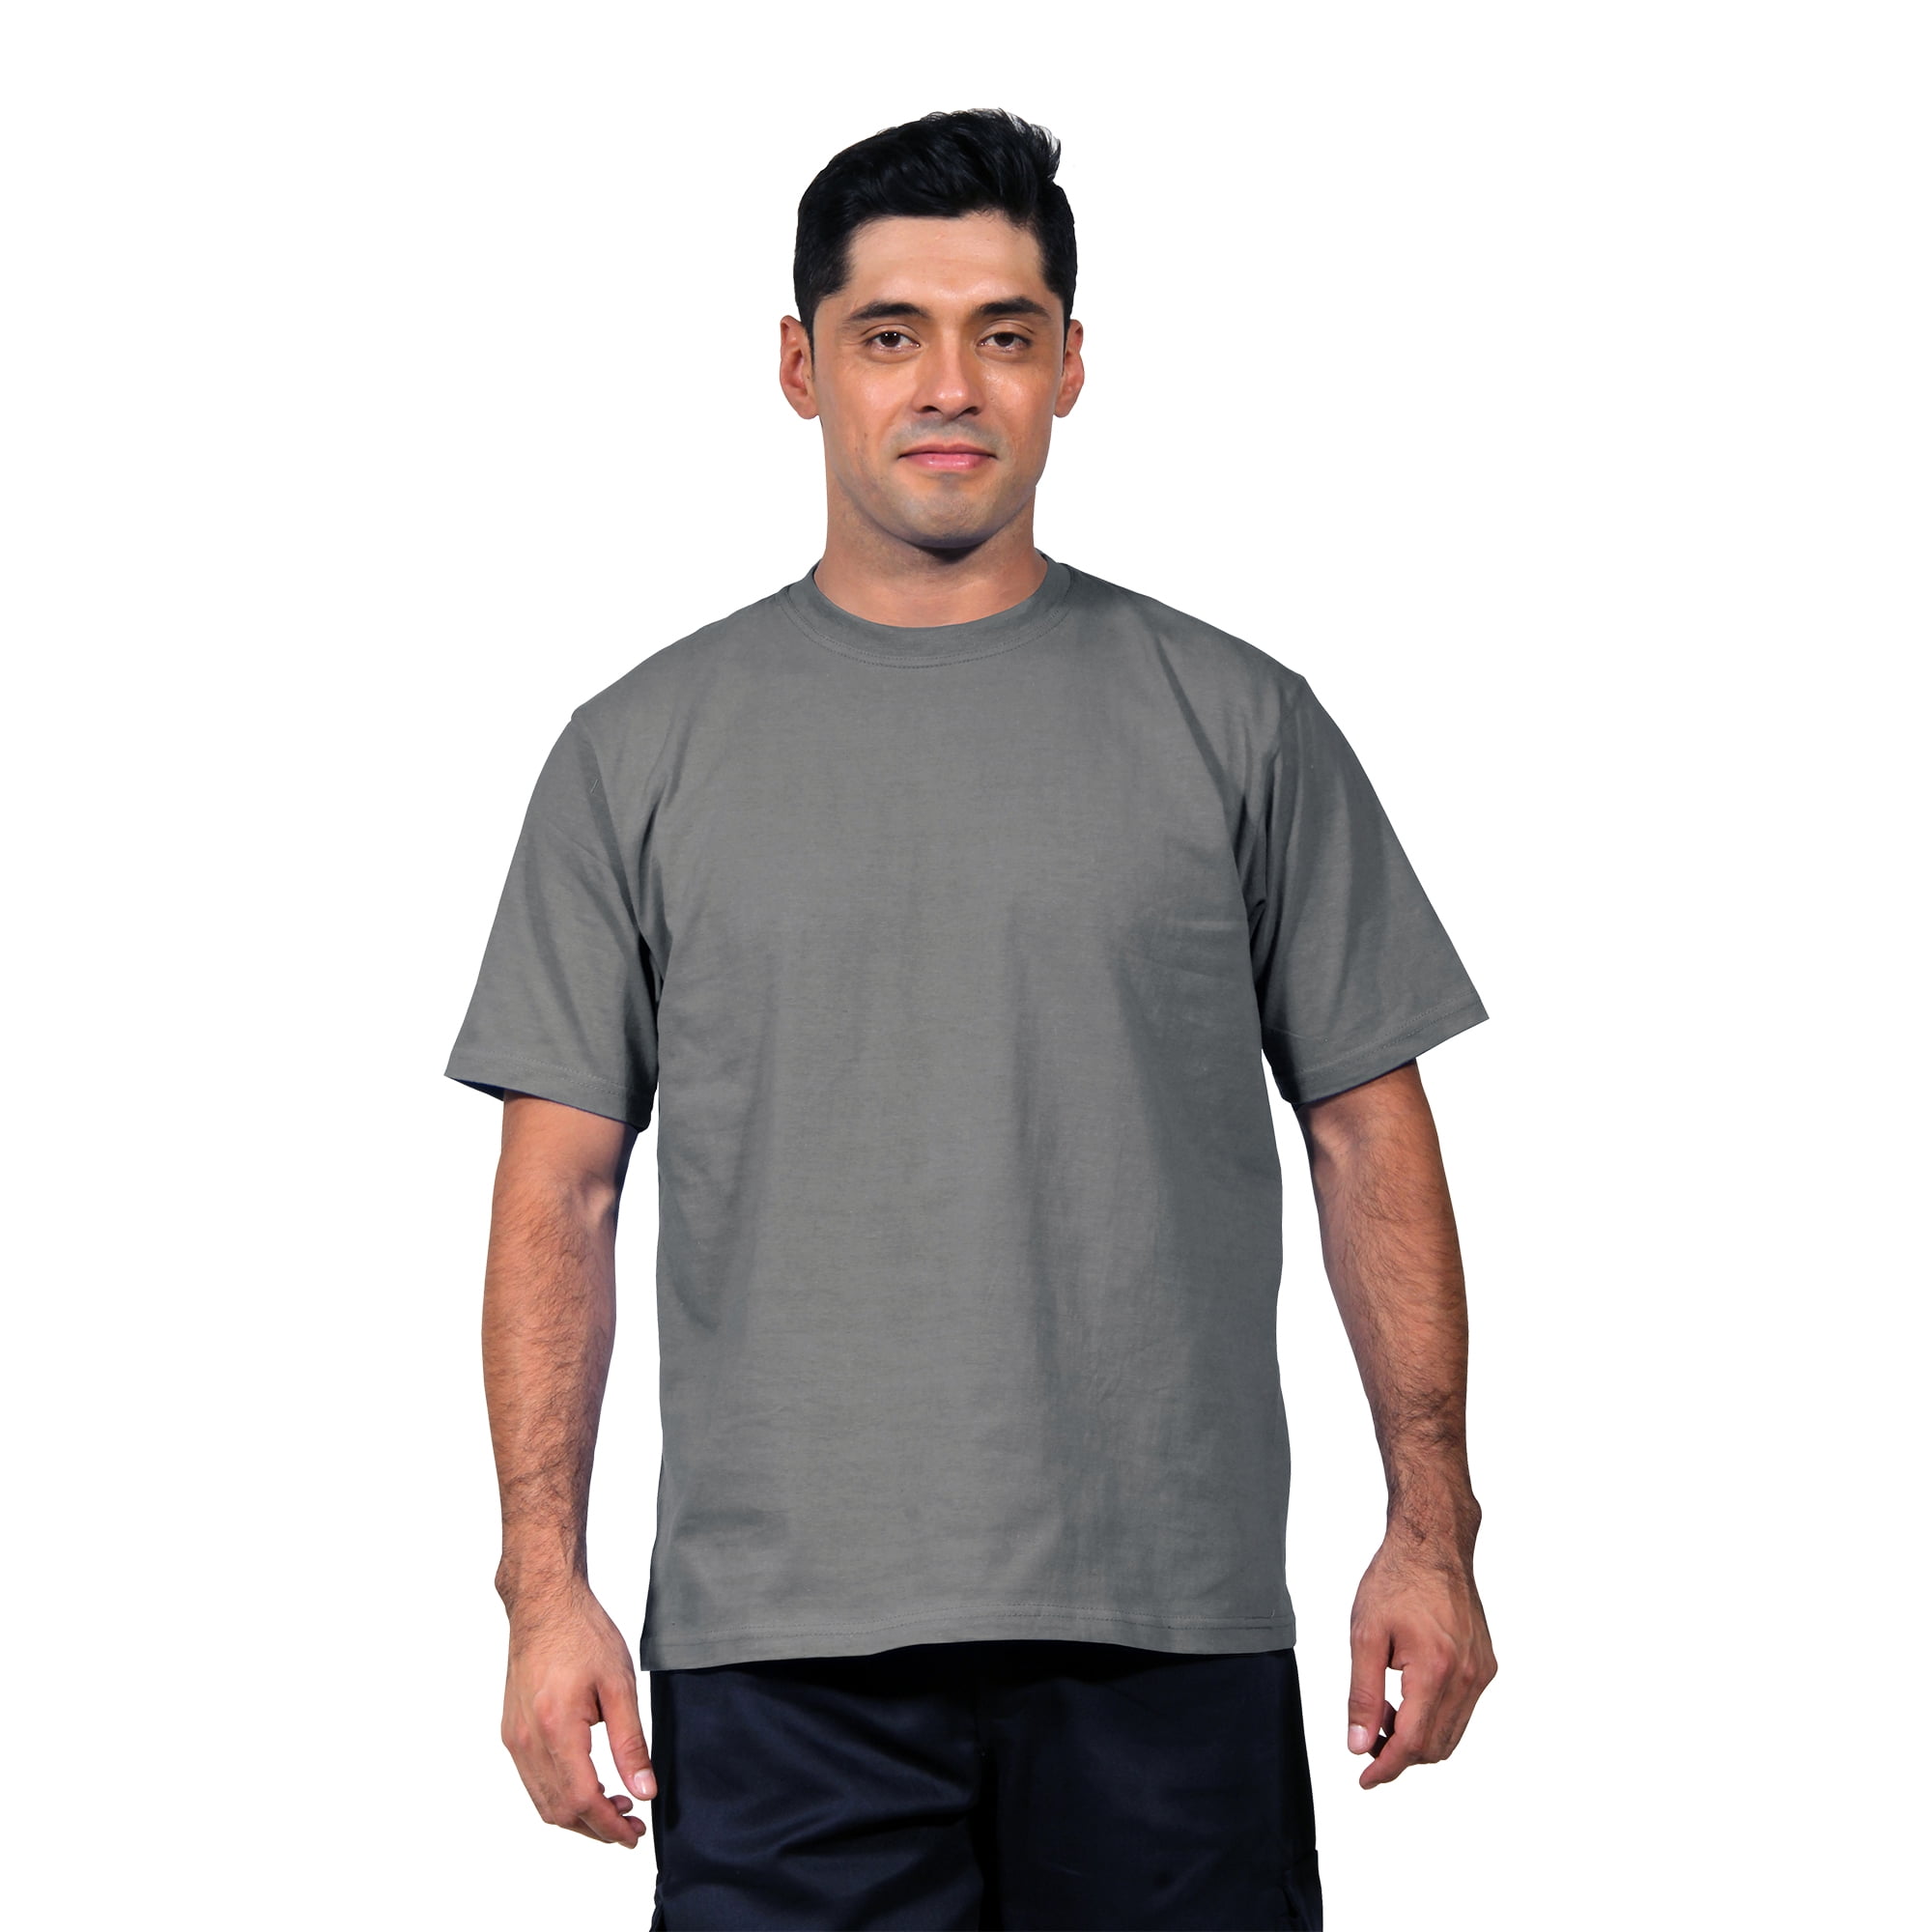 Camisetas para hombre en algodón 100% x 3 unidades. GENERICO